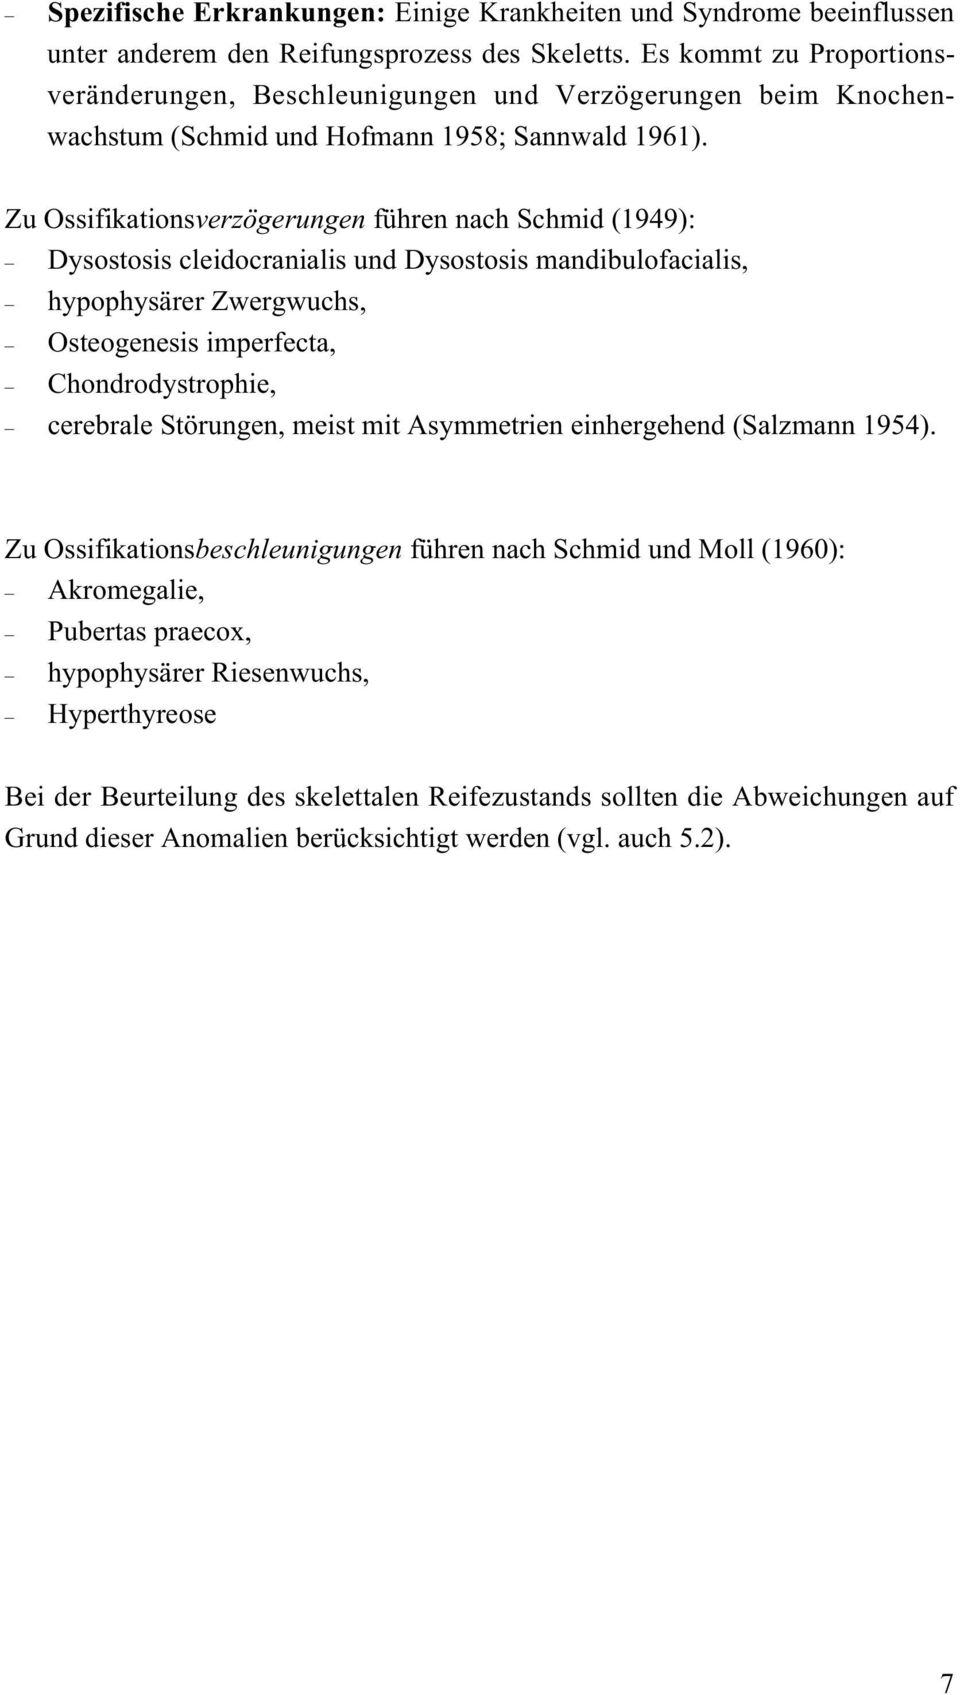 Zu Ossifikationsverzögerungen führen nach Schmid (1949): Dysostosis cleidocranialis und Dysostosis mandibulofacialis, hypophysärer Zwergwuchs, Osteogenesis imperfecta, Chondrodystrophie, cerebrale